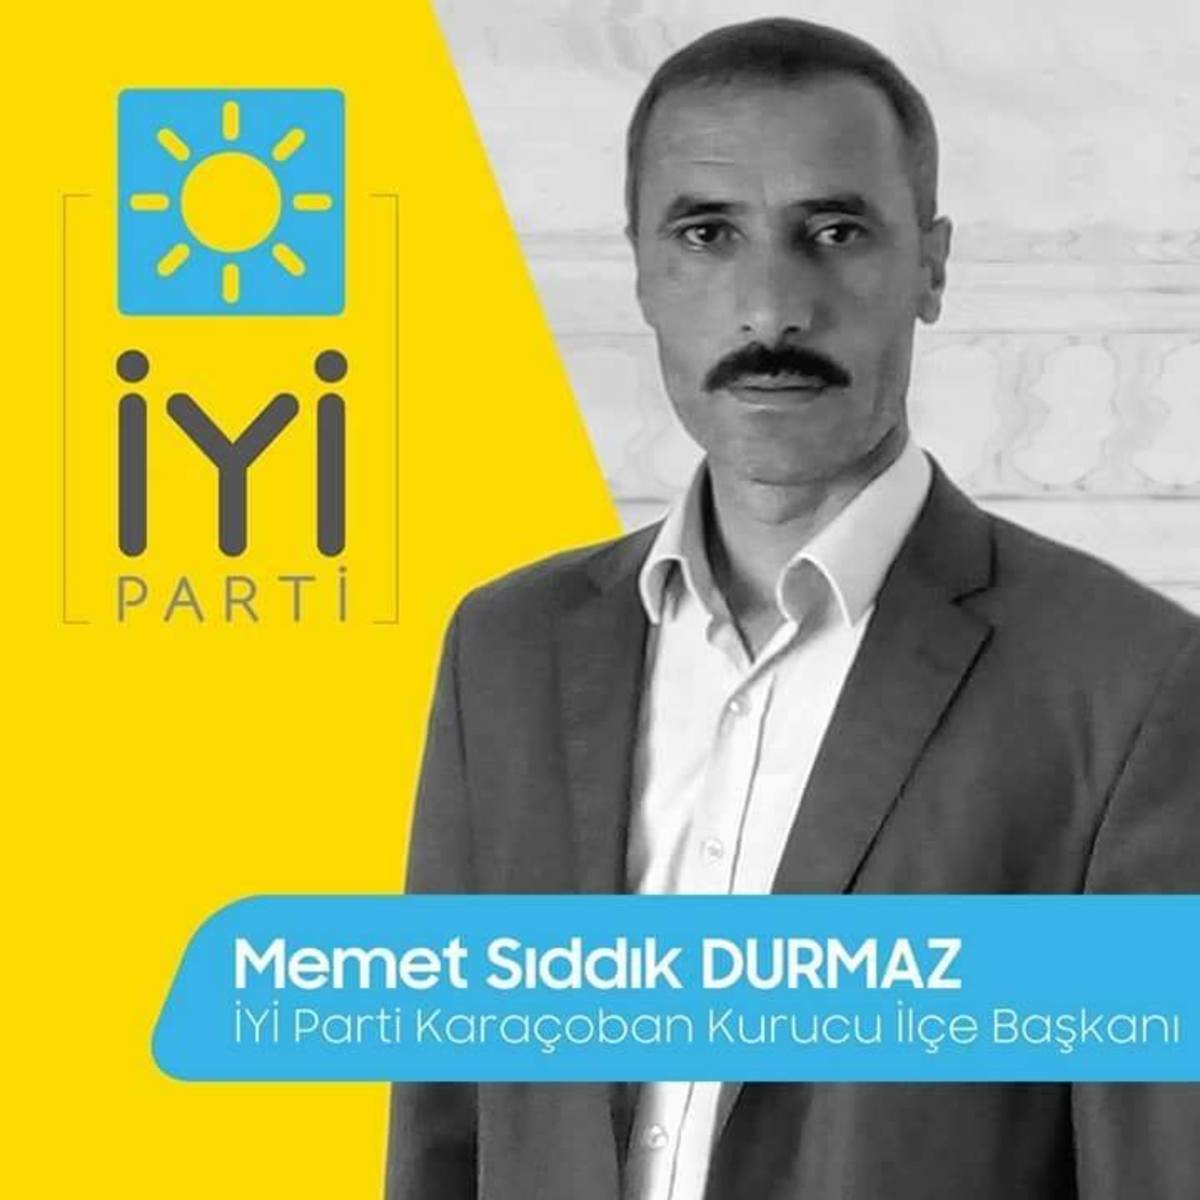 Εκλογές Τουρκία: Χάος και φήμες για τρεις νεκρούς – Εισαγγελική παρέμβαση